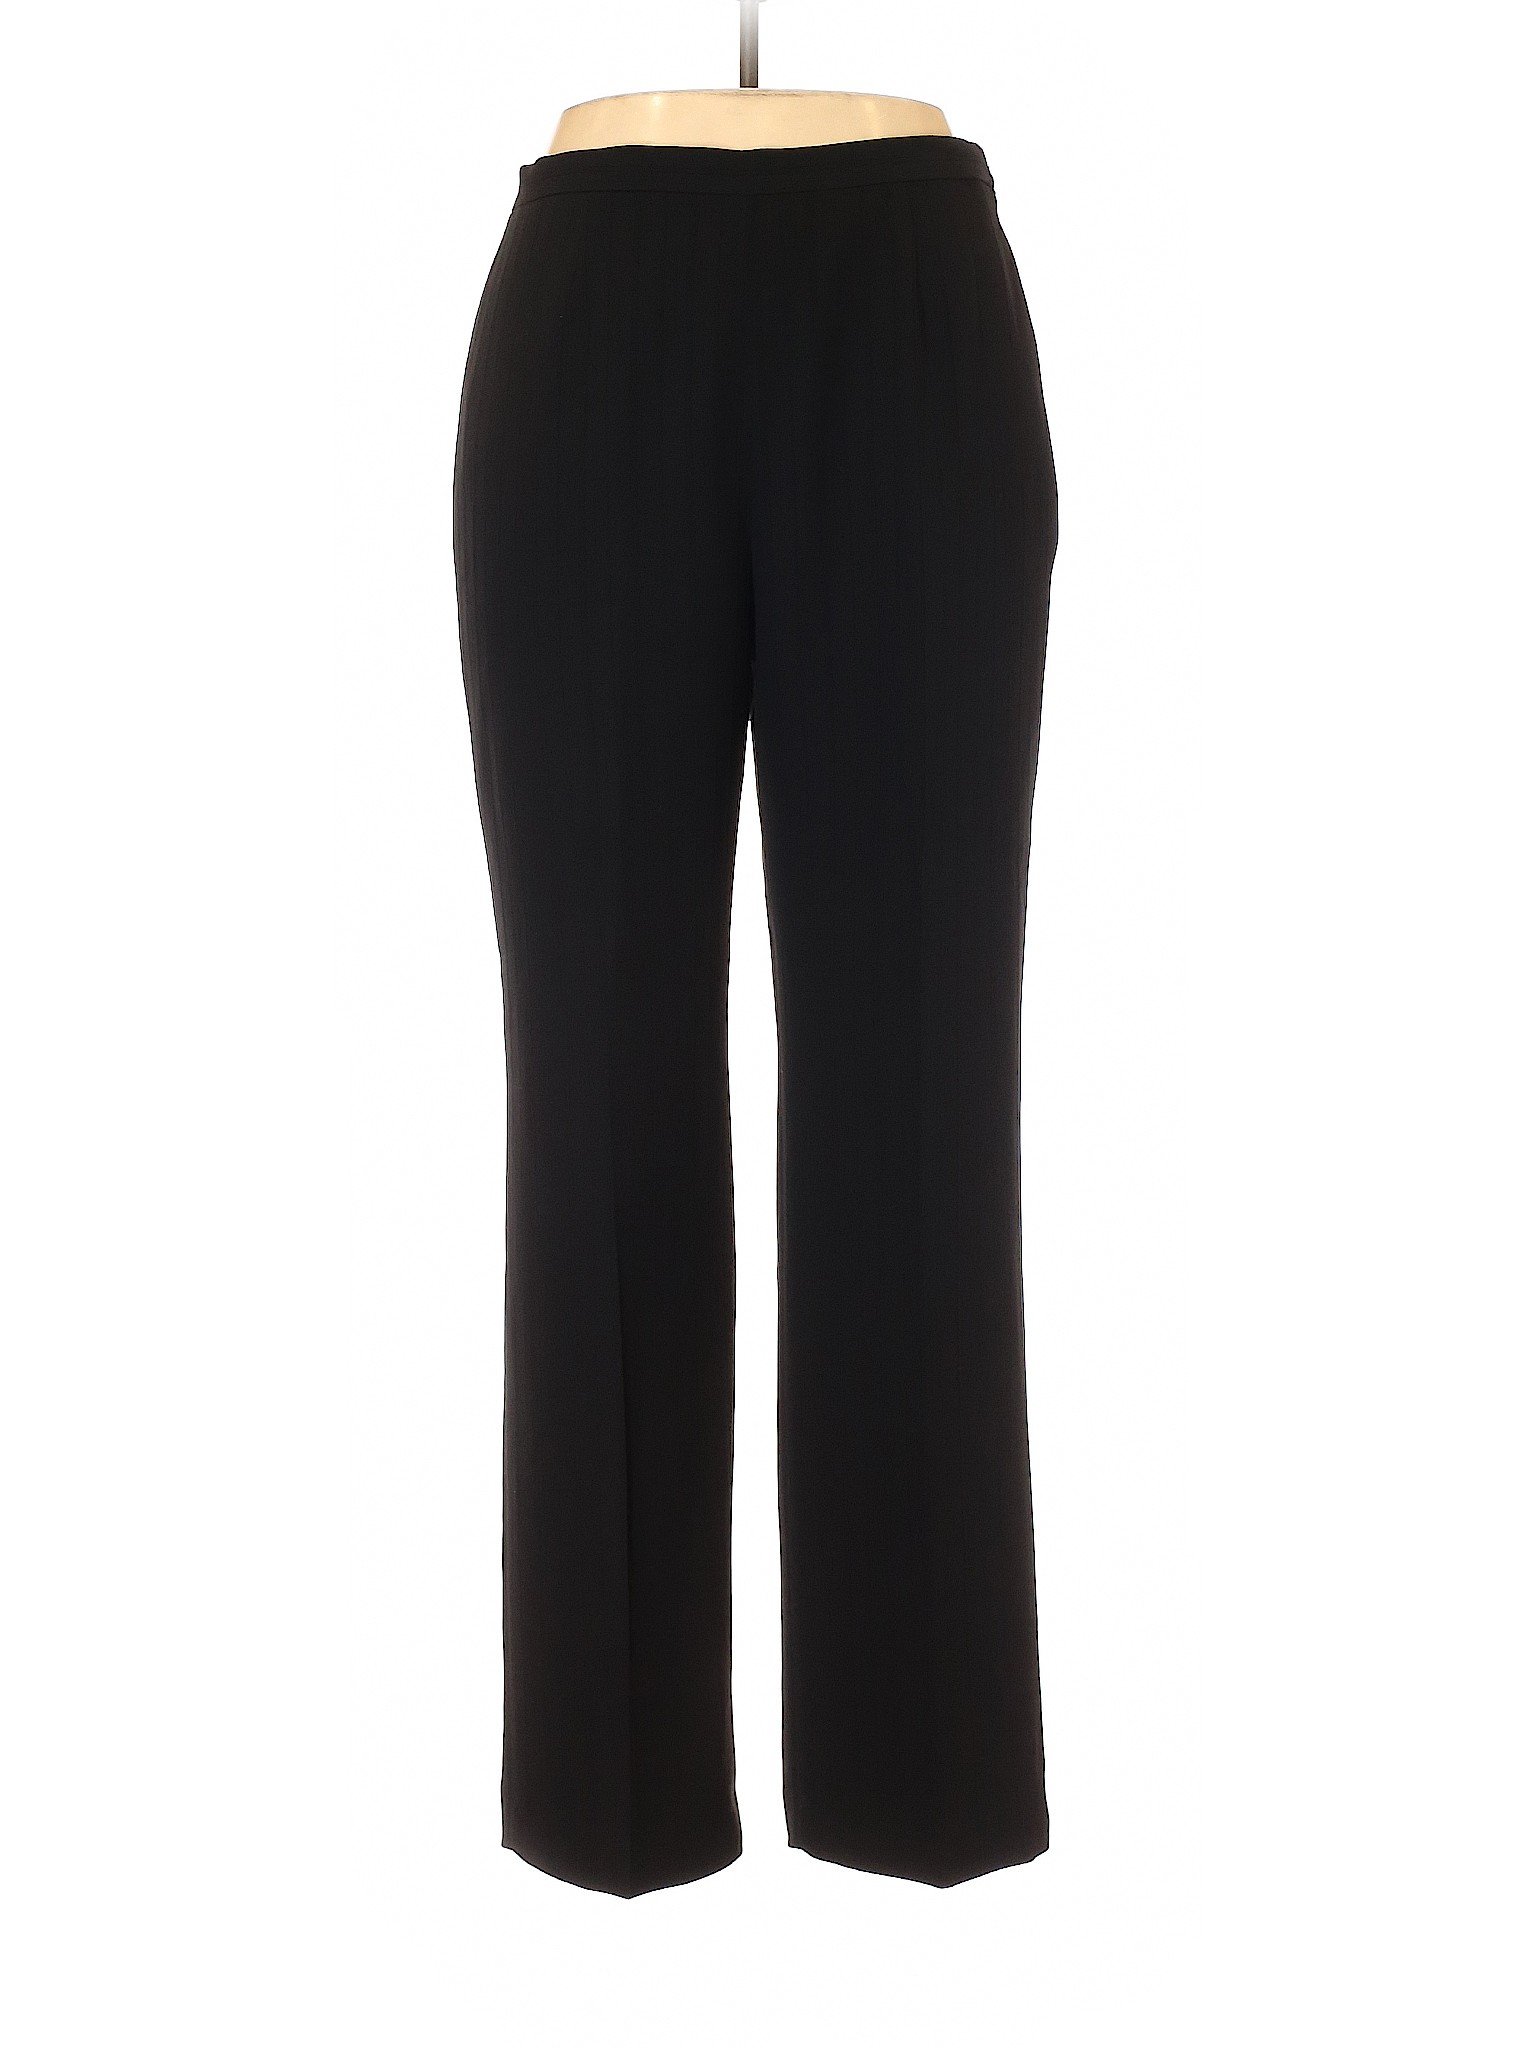 Le Suit Women Black Dress Pants 10 Petite | eBay